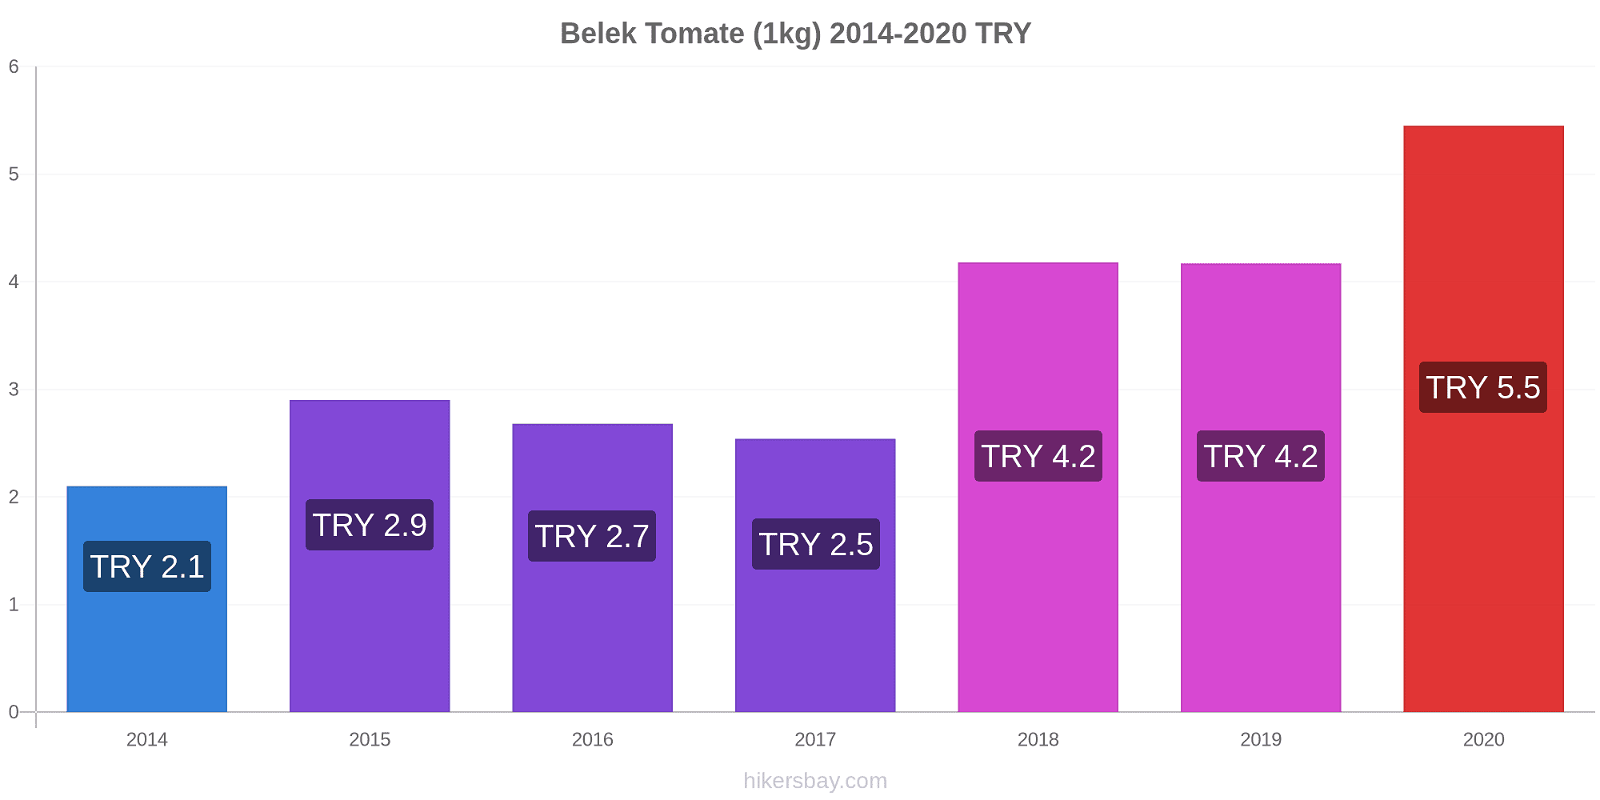 Belek changements de prix Tomate (1kg) hikersbay.com